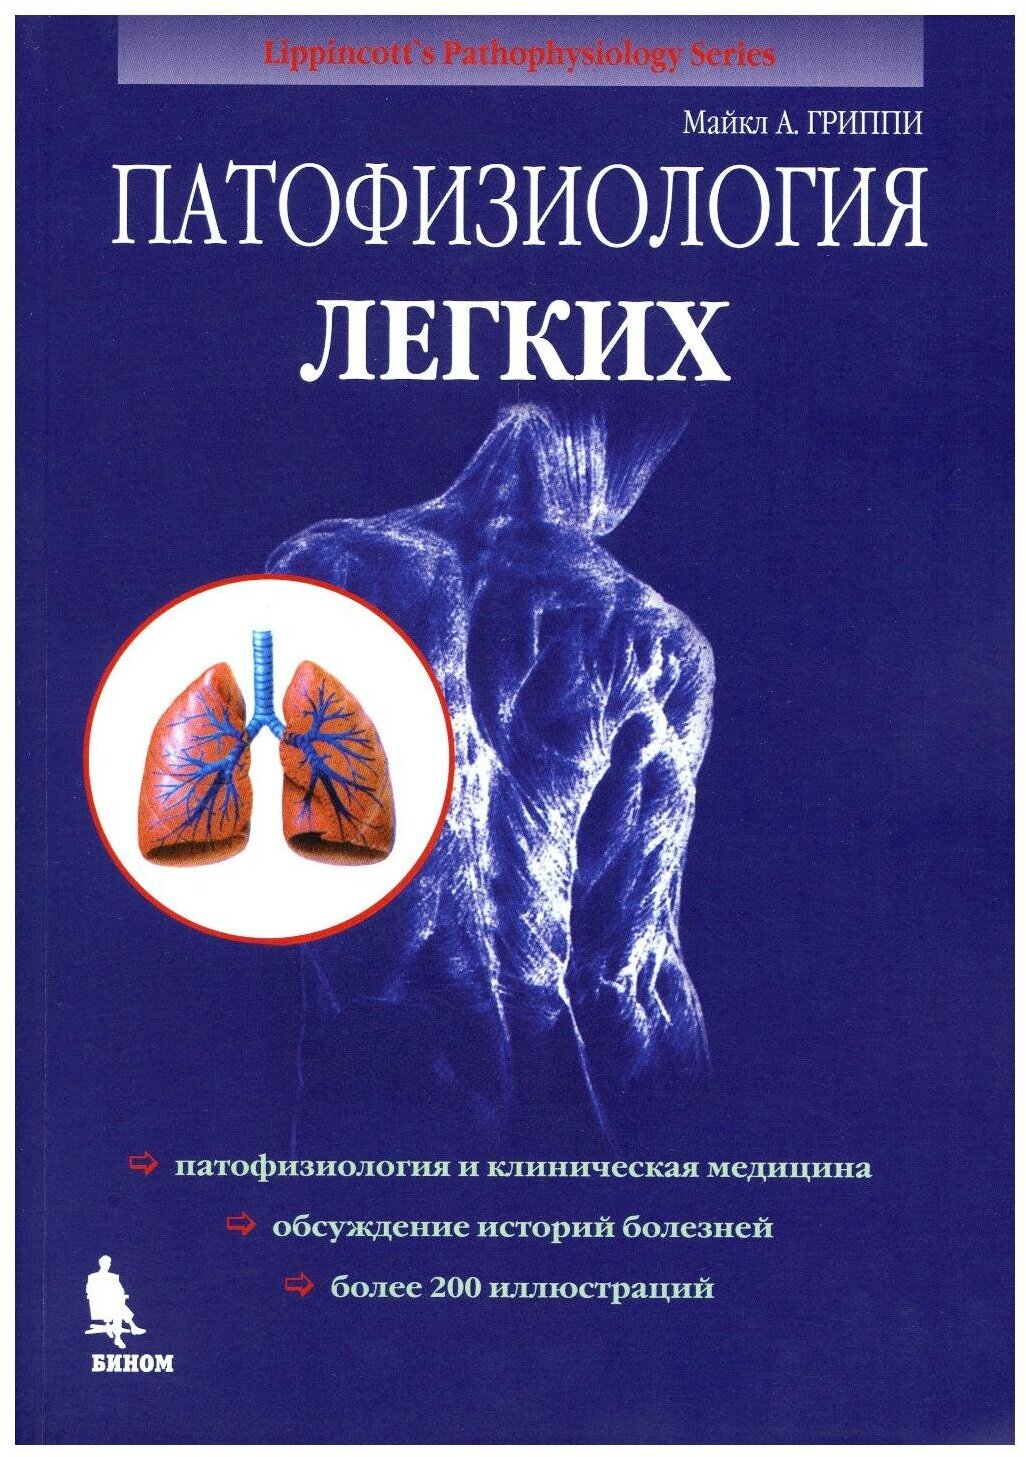 Патофизиология легких 2-е изд. - фото №2